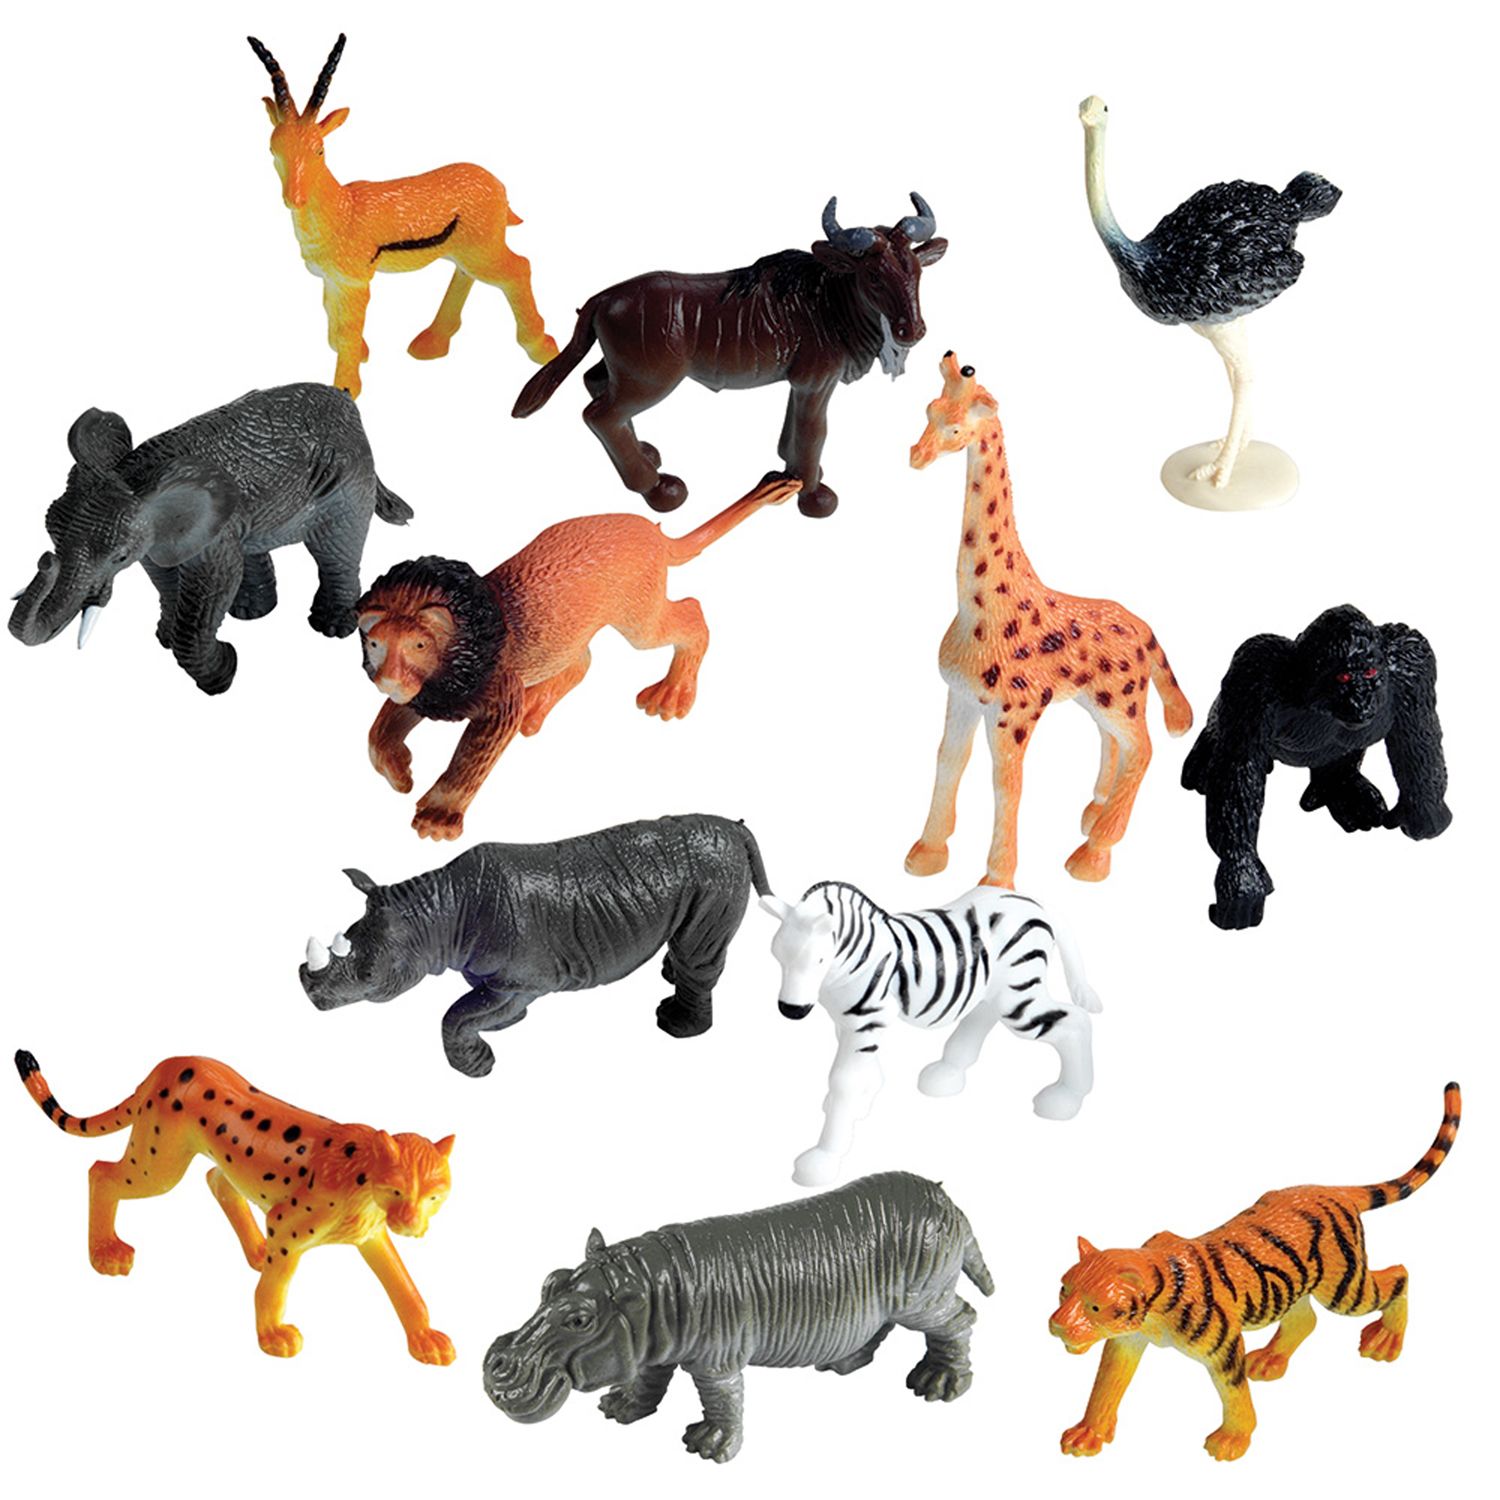 plastic jungle animals